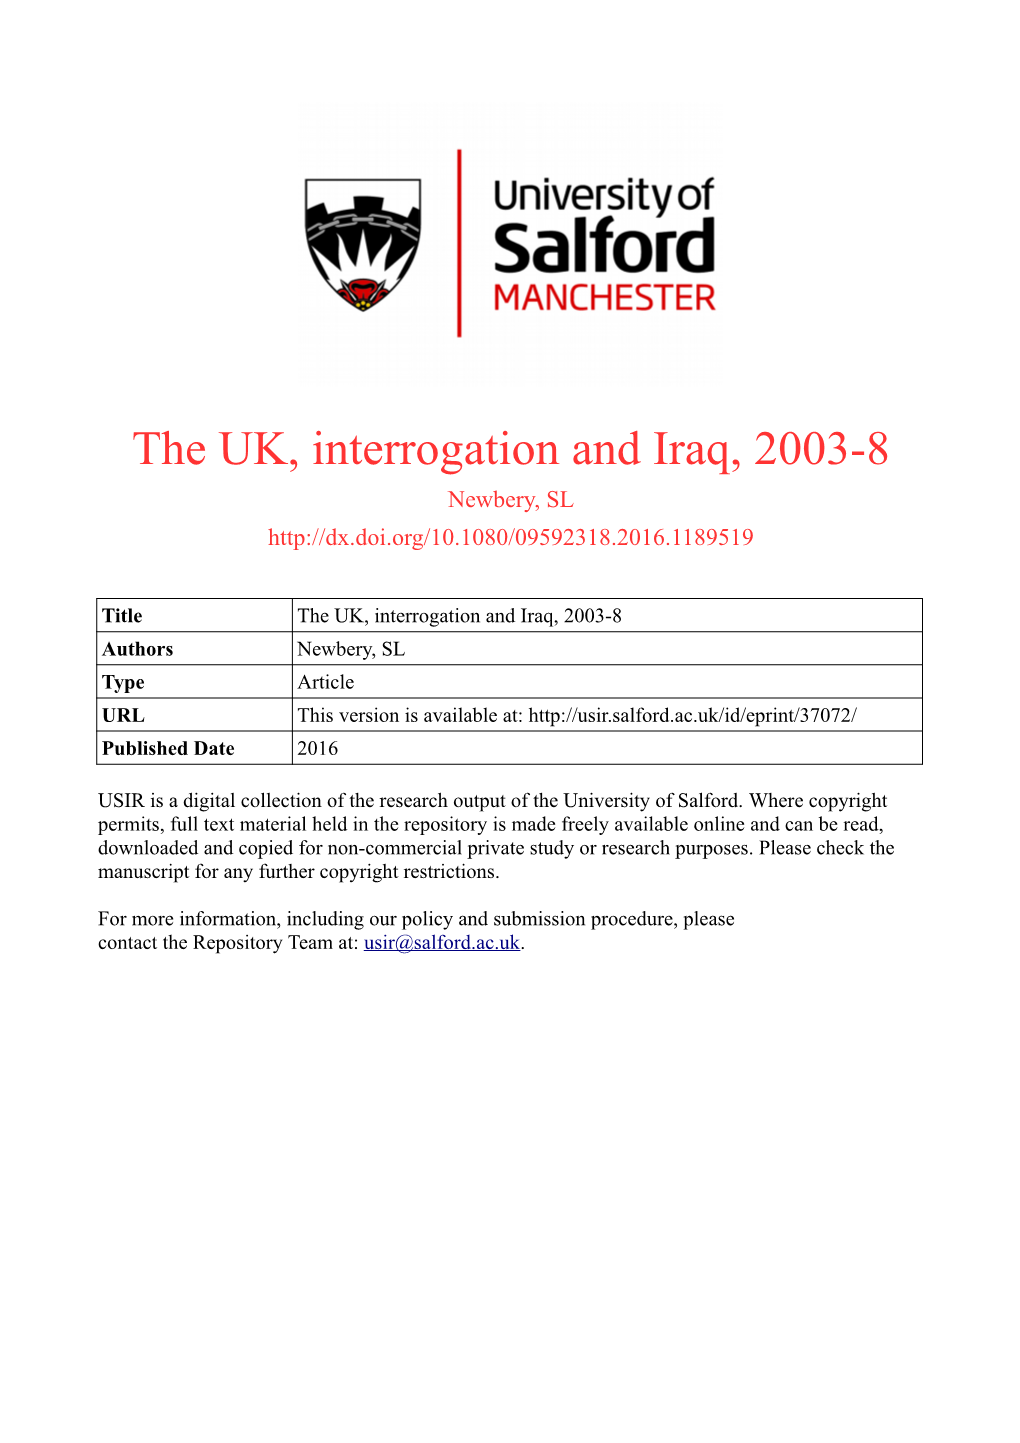 The UK, Interrogation and Iraq, 2003-8 Newbery, SL